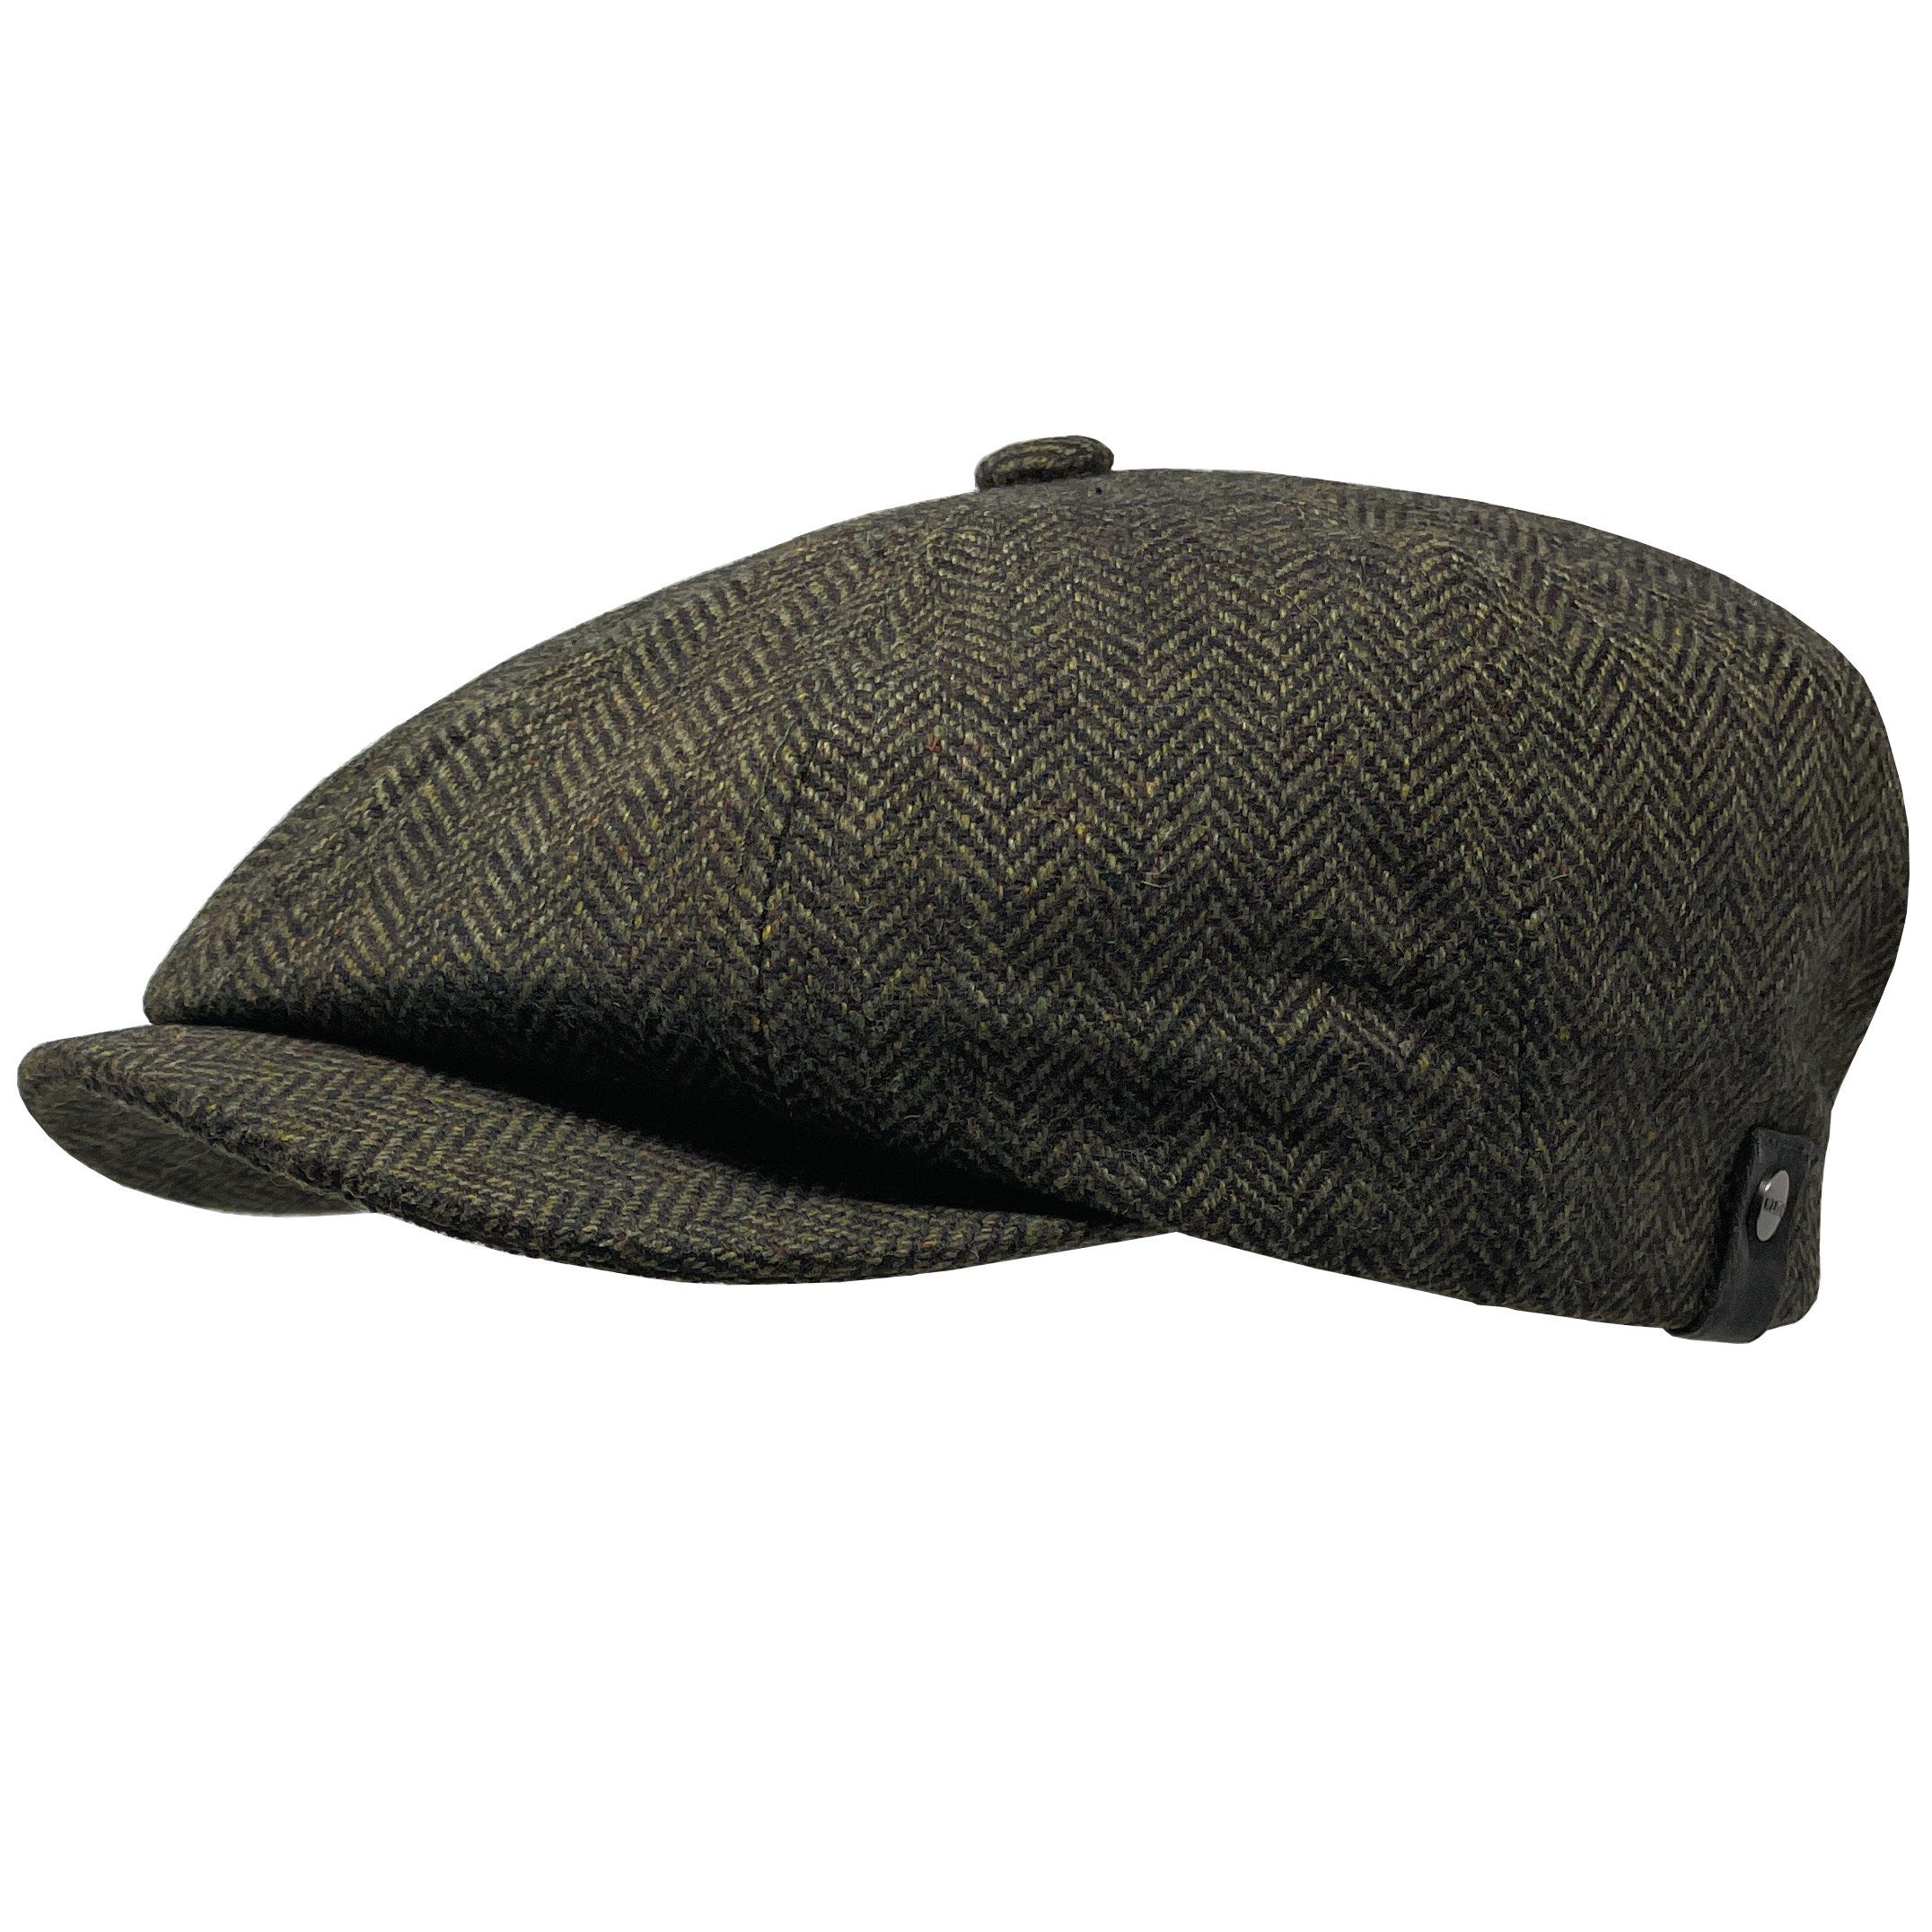 WEROR Schiebermütze »WEROR-320.1« Flatcap Schirmmütze Mütze Cap 3-RP9/10  online kaufen | OTTO